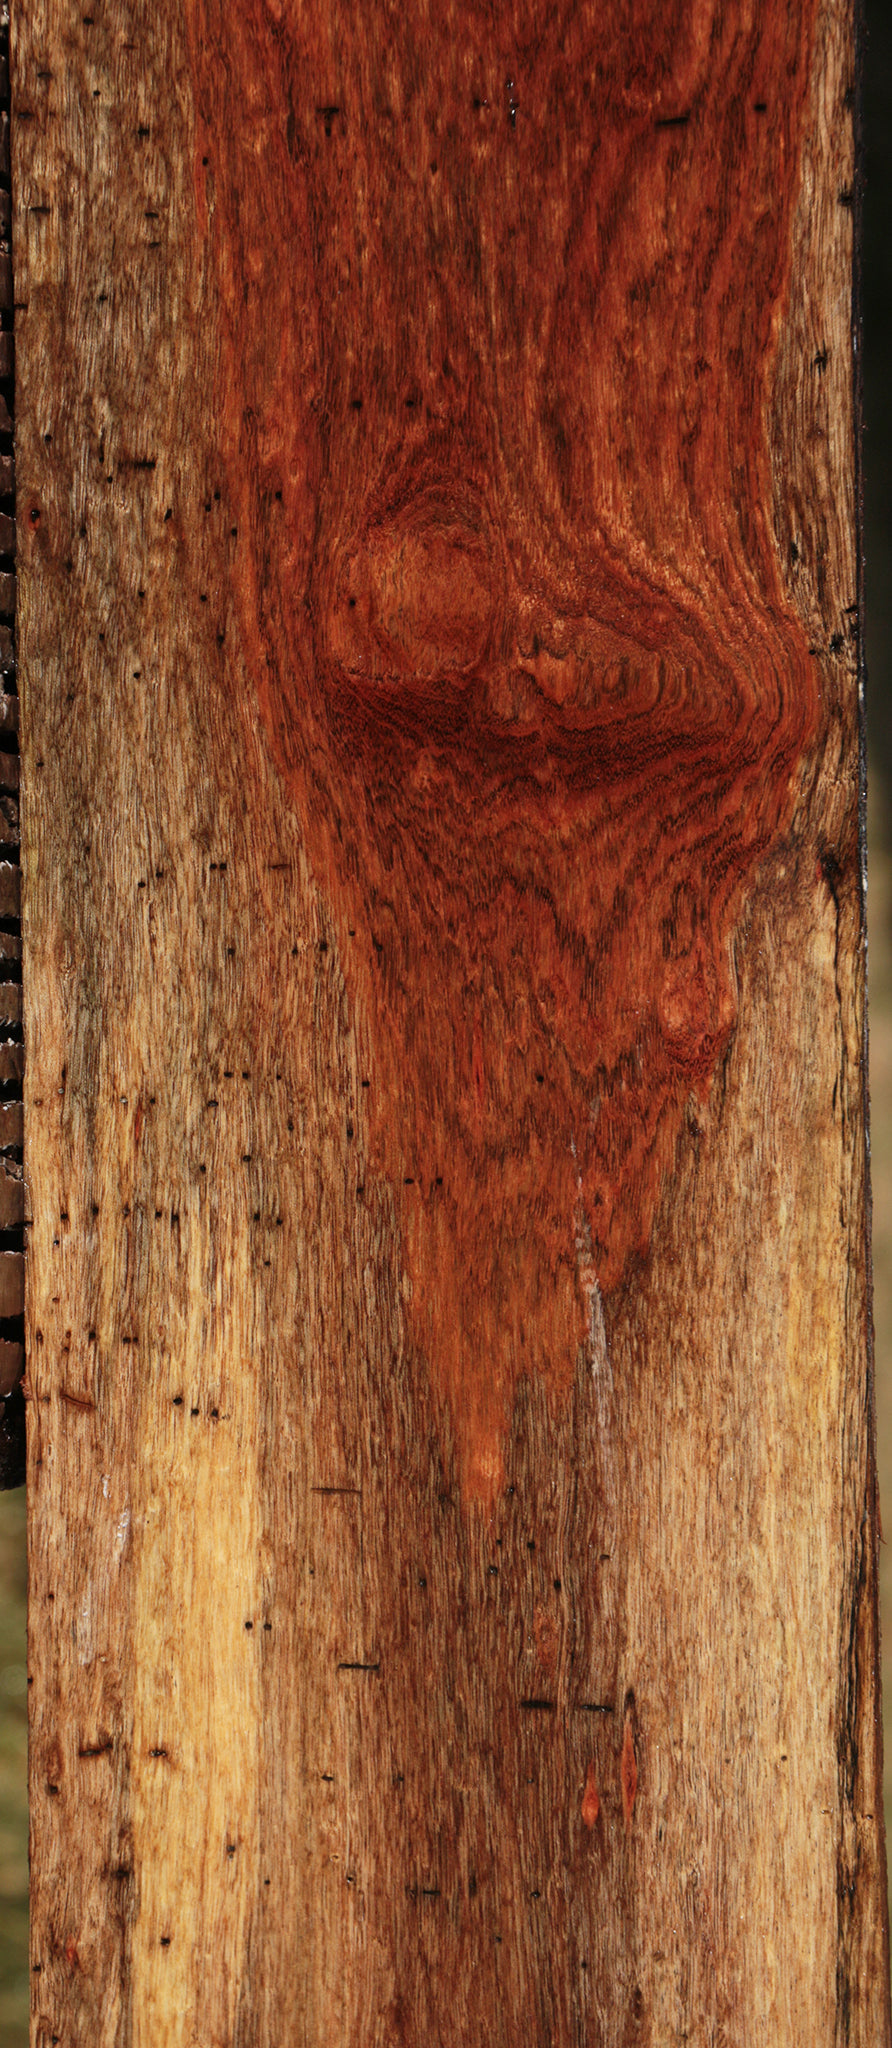 Chechen Lumber